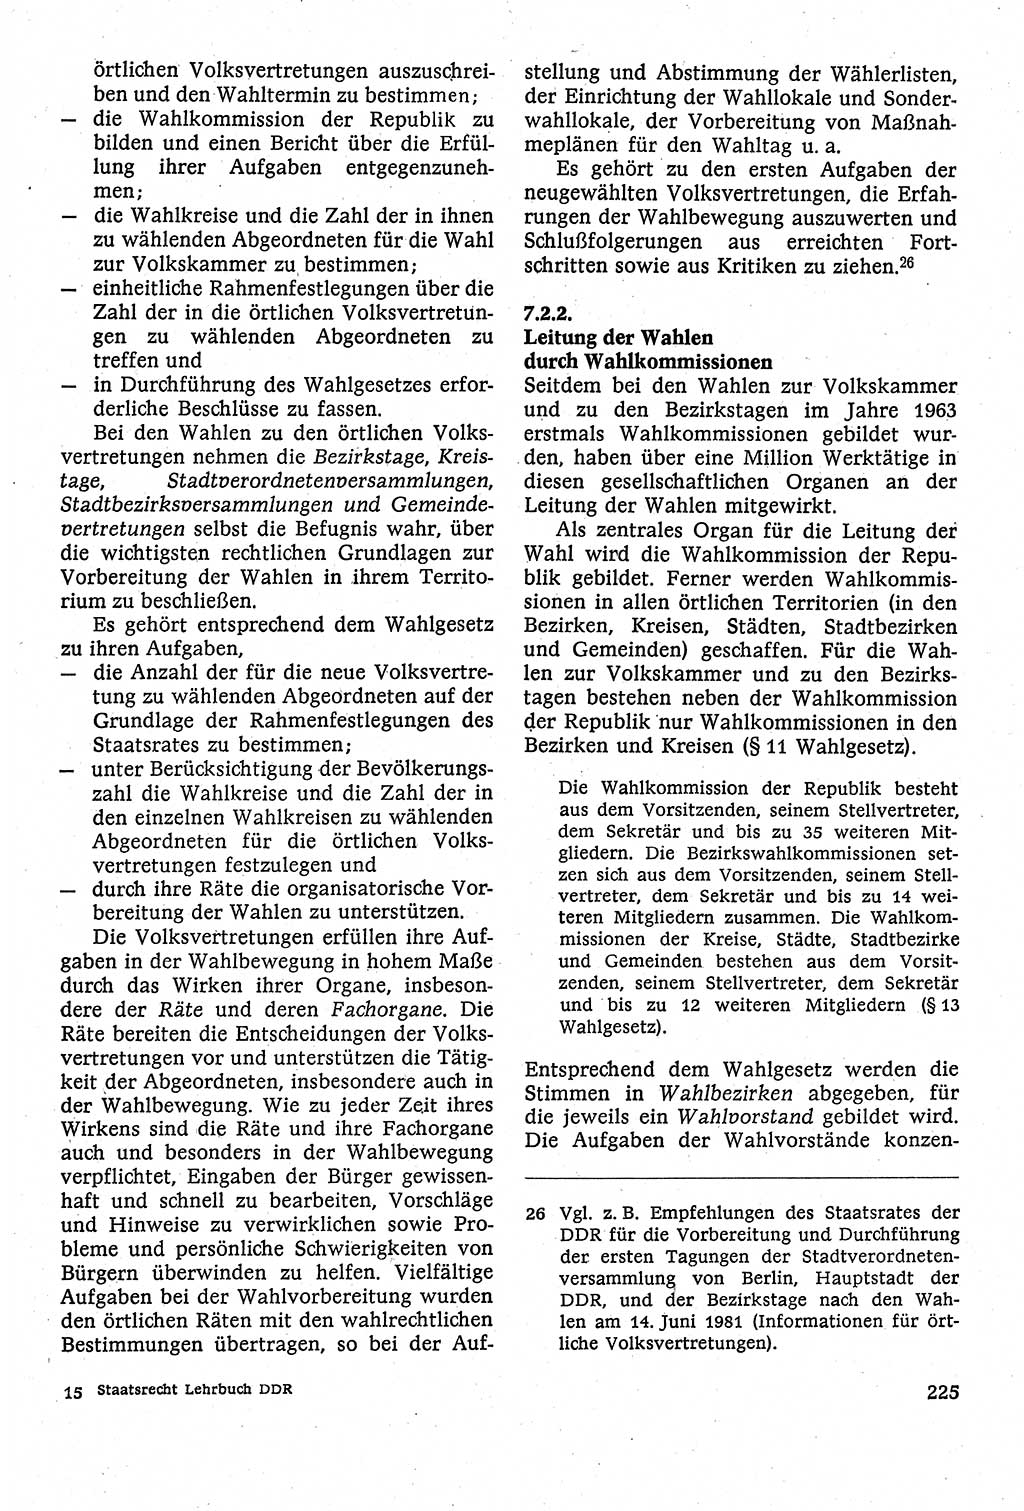 Staatsrecht der DDR [Deutsche Demokratische Republik (DDR)], Lehrbuch 1984, Seite 225 (St.-R. DDR Lb. 1984, S. 225)